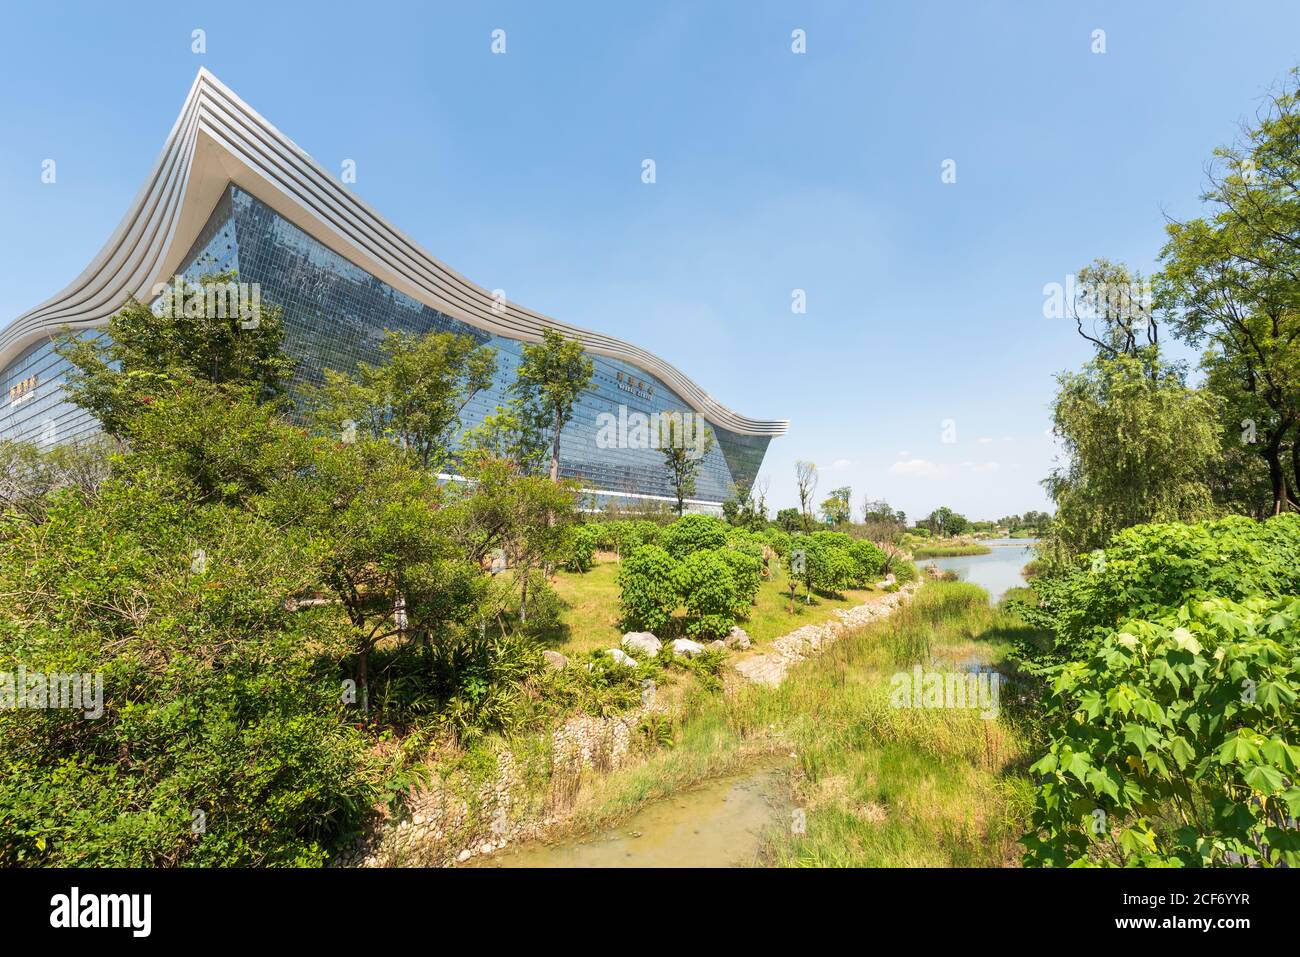 Chengdu, province du Sichuan, Chine - 26 août 2020 : vue sur le bâtiment du Centre mondial du Nouveau siècle depuis le parc Guixi par une journée ensoleillée avec un ciel bleu clair Banque D'Images